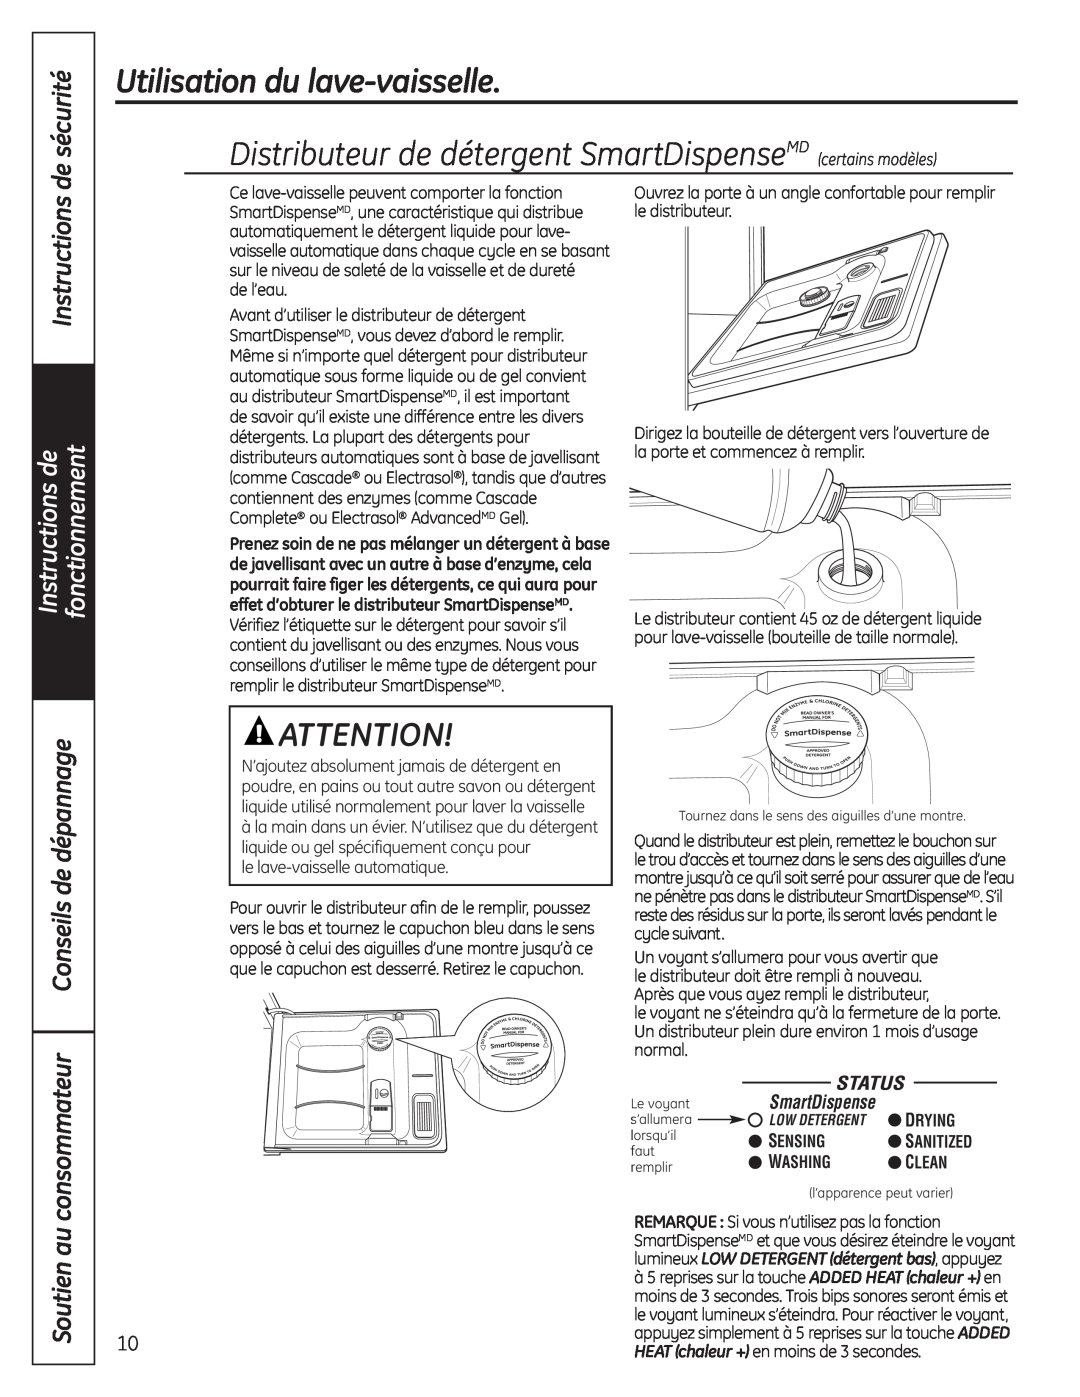 GE Stainless Steel Tub Dishwasher consommateur Conseils de dépannage, Instructions, Soutien au, de sécurité, SmartDispense 